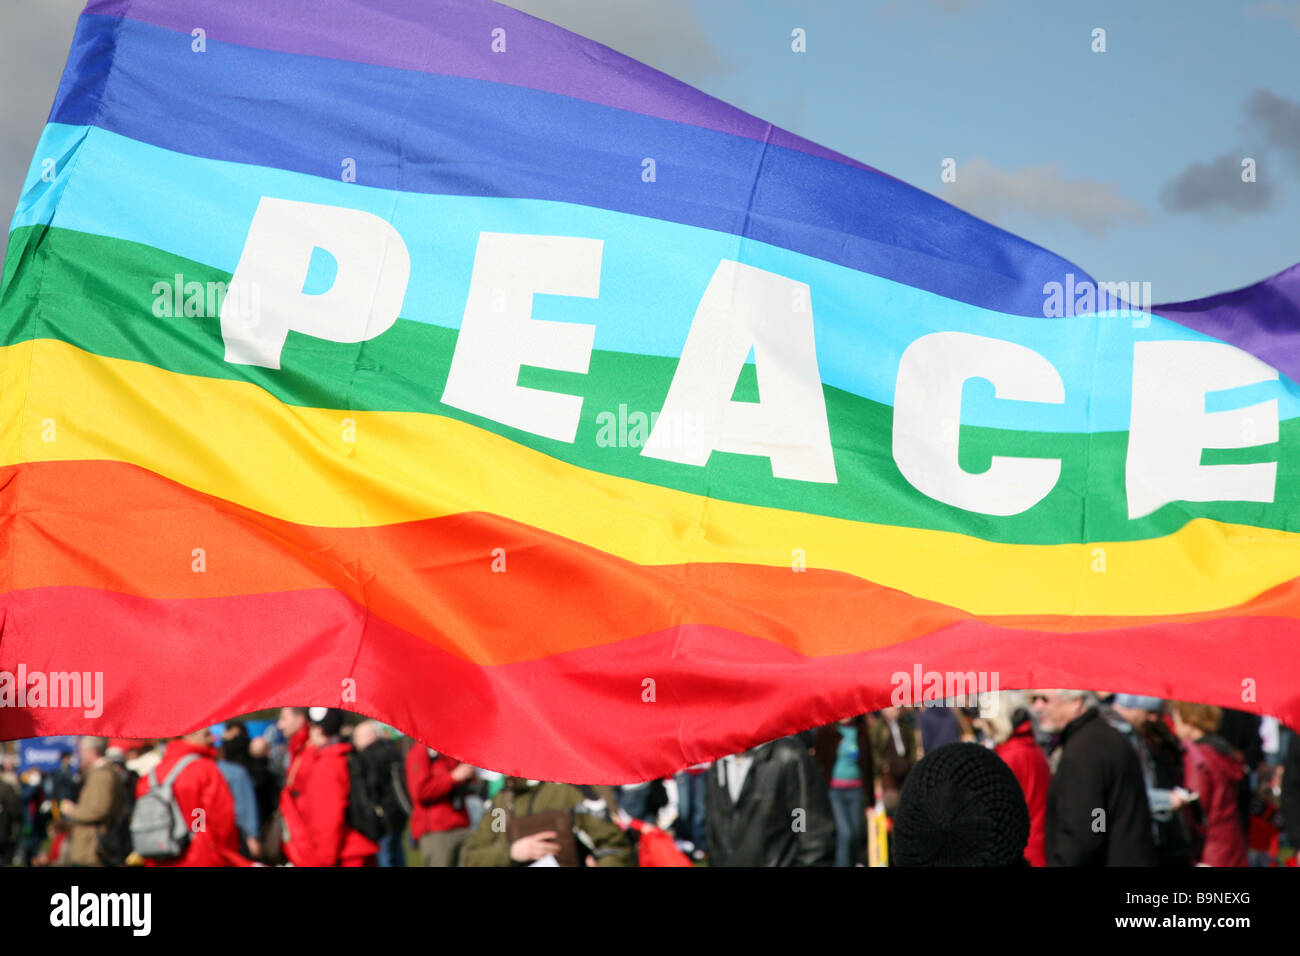 La bandera de la paz al poner a la gente en primer lugar manifestación en Londres. Foto de stock